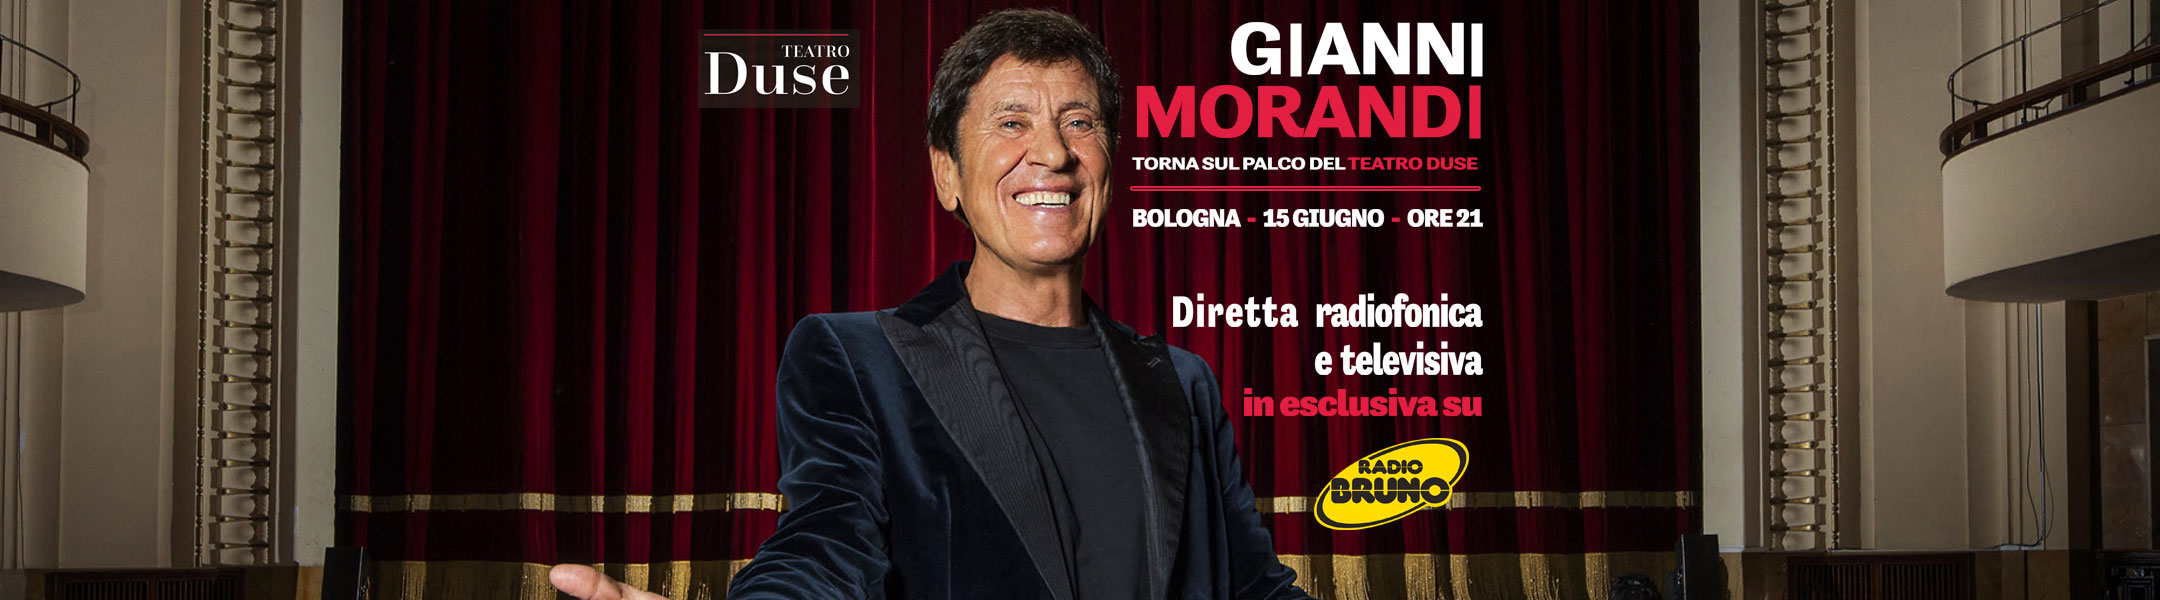 Gianni Morandi il 15 giugno in diretta esclusiva radio e tv su Radio Bruno